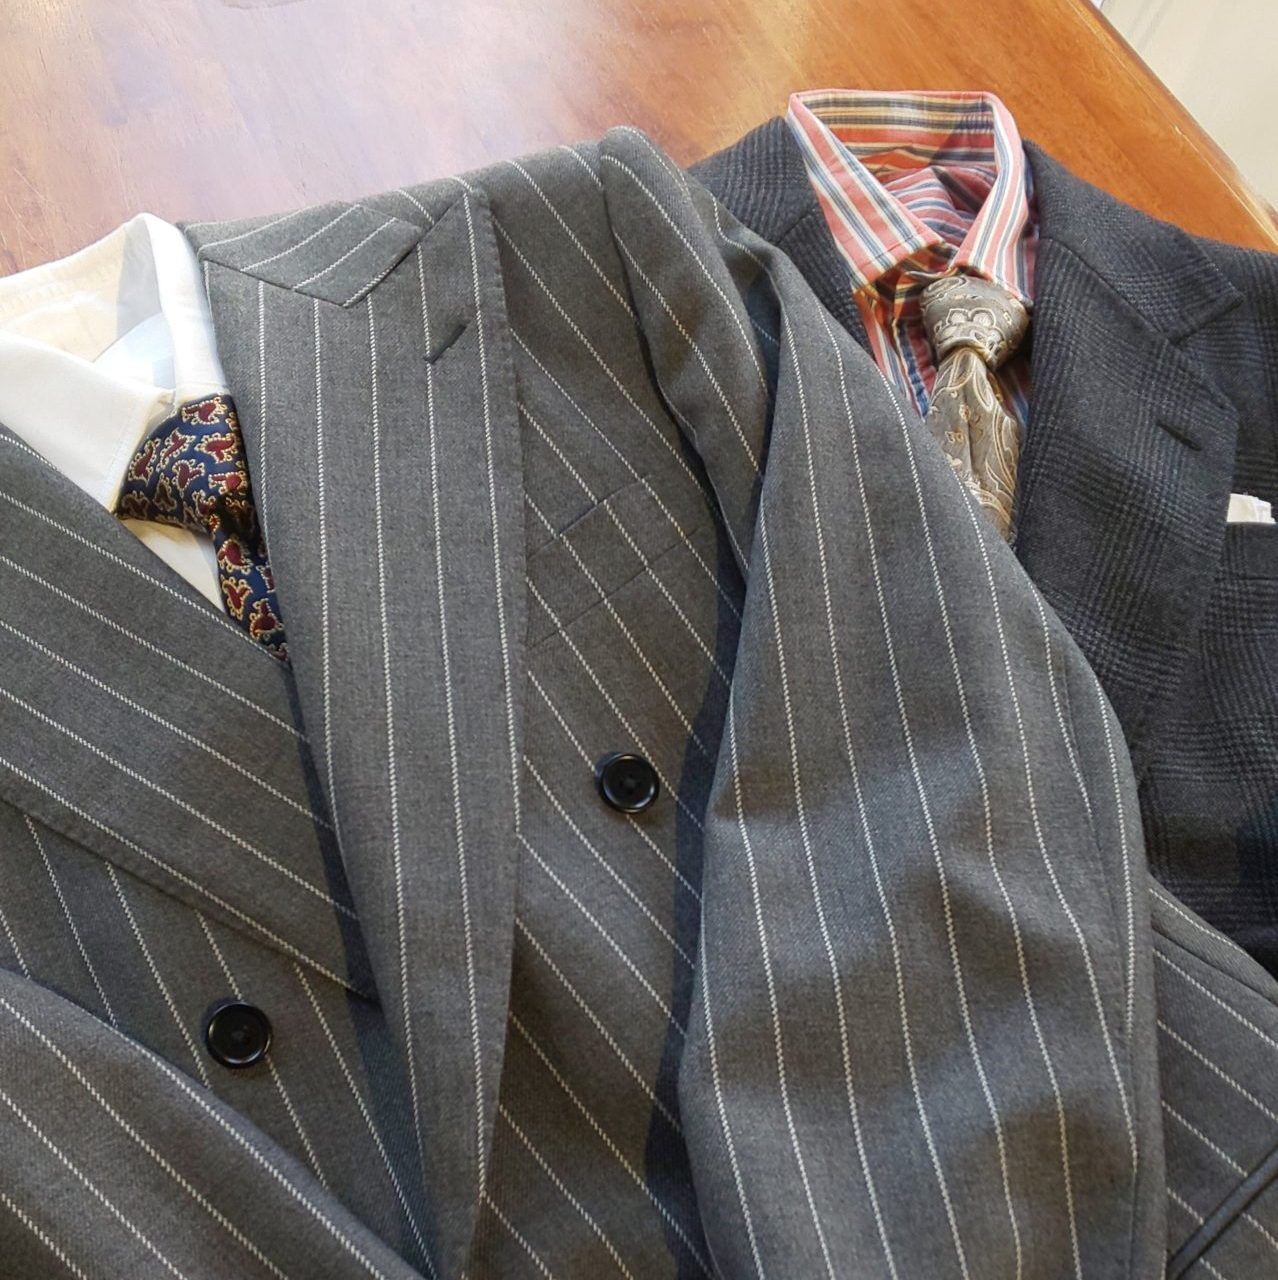 グレーのスーツをオーダーするのが新しい!? | SARTOKLEIS 大阪のオーダースーツ専門店